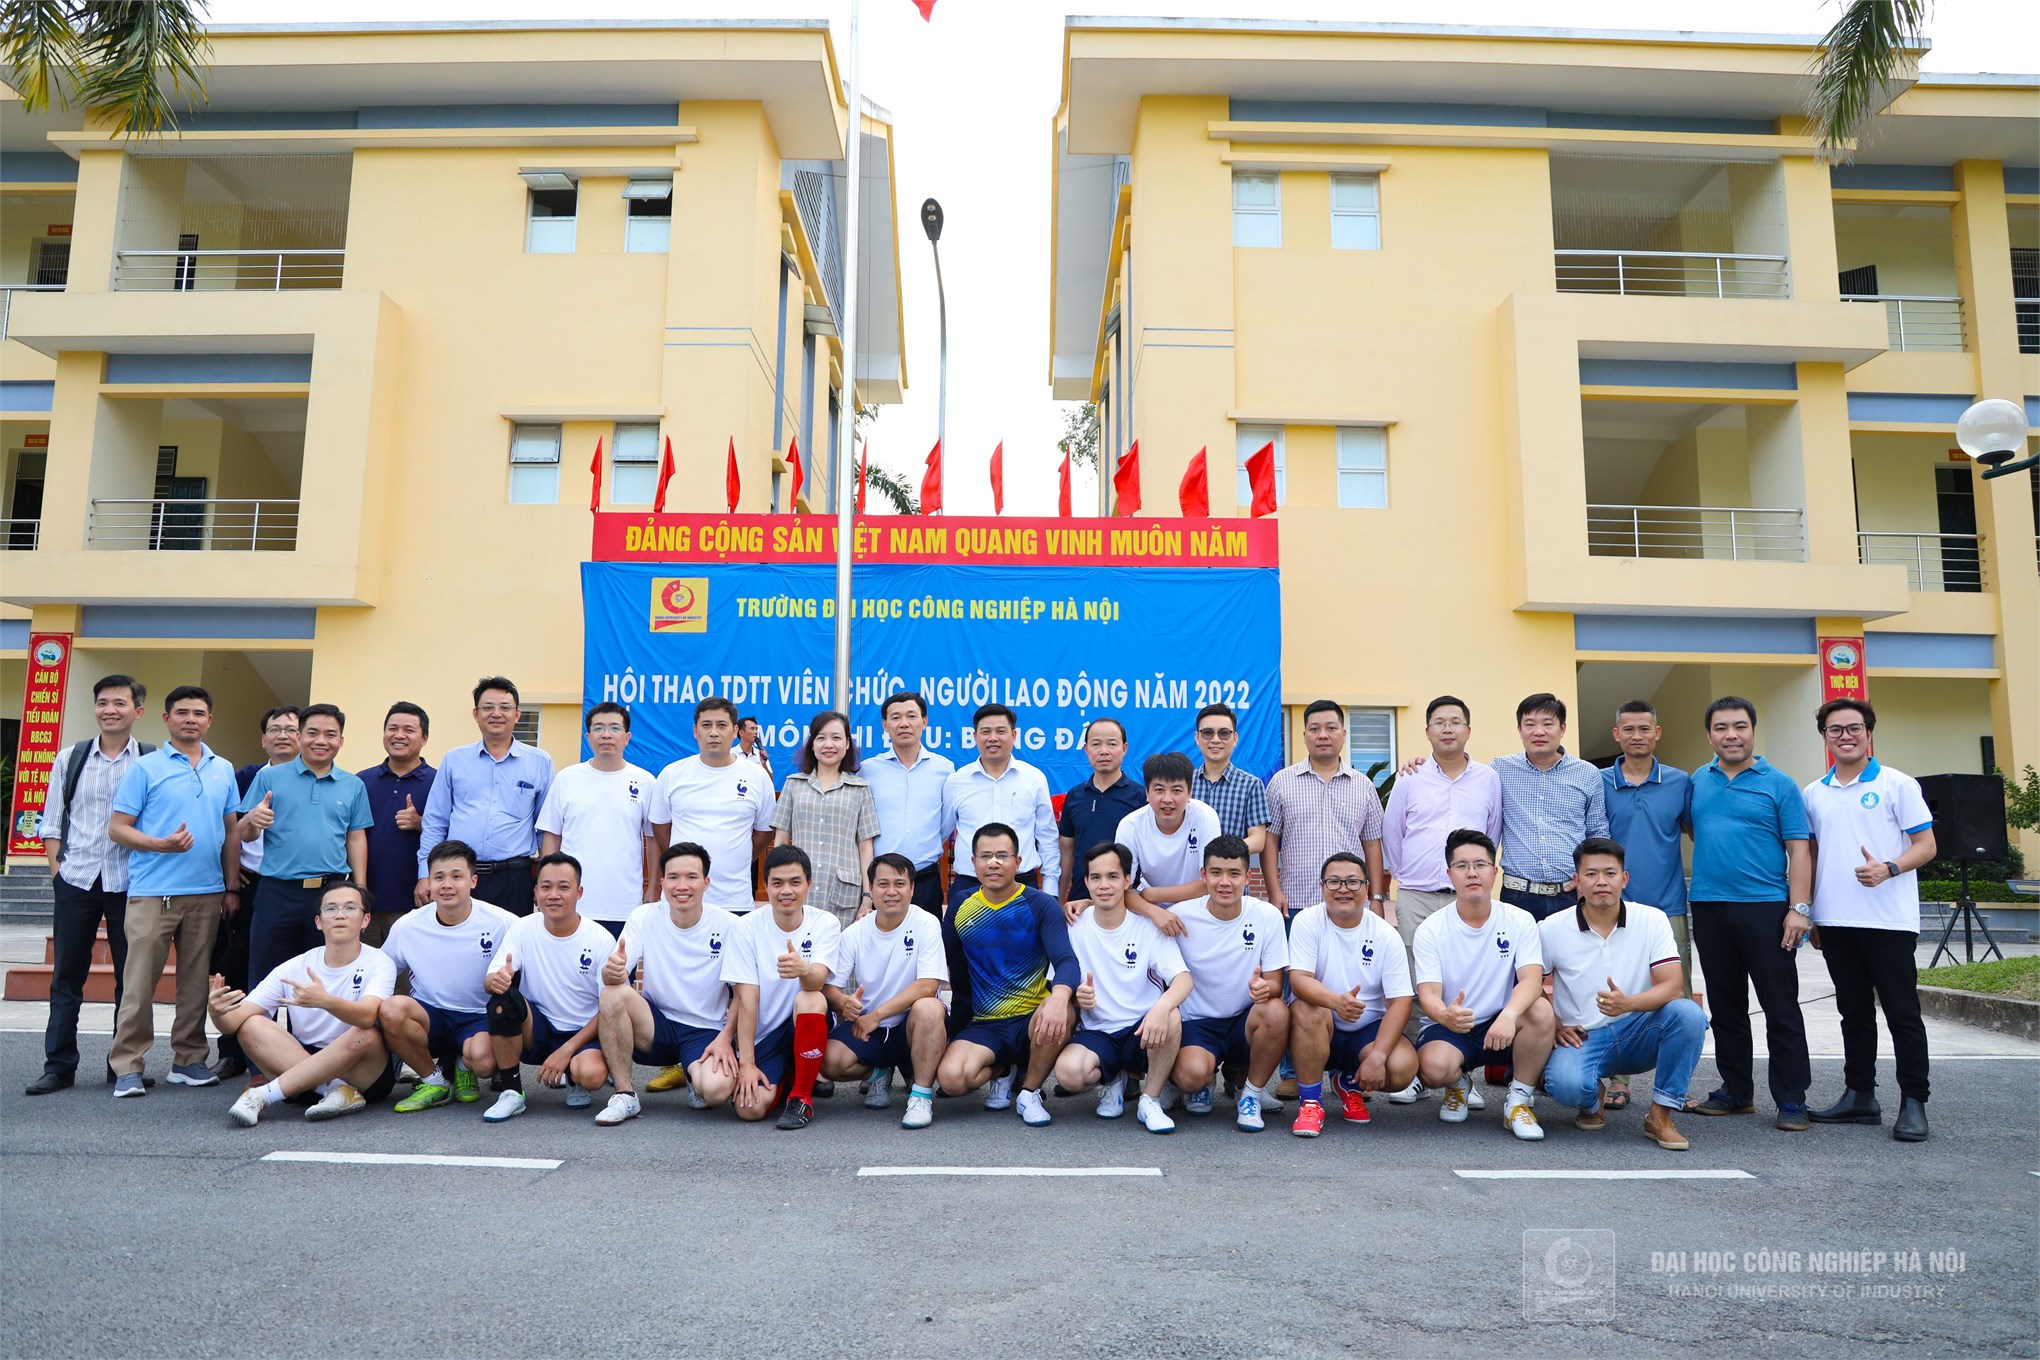 Liên quân Cơ khí-Tổ chức Hành chính-Hỗ trợ sinh viên-Truyền thông vô địch tại Giải bóng đá nam Viên chức, Người lao động năm 2022